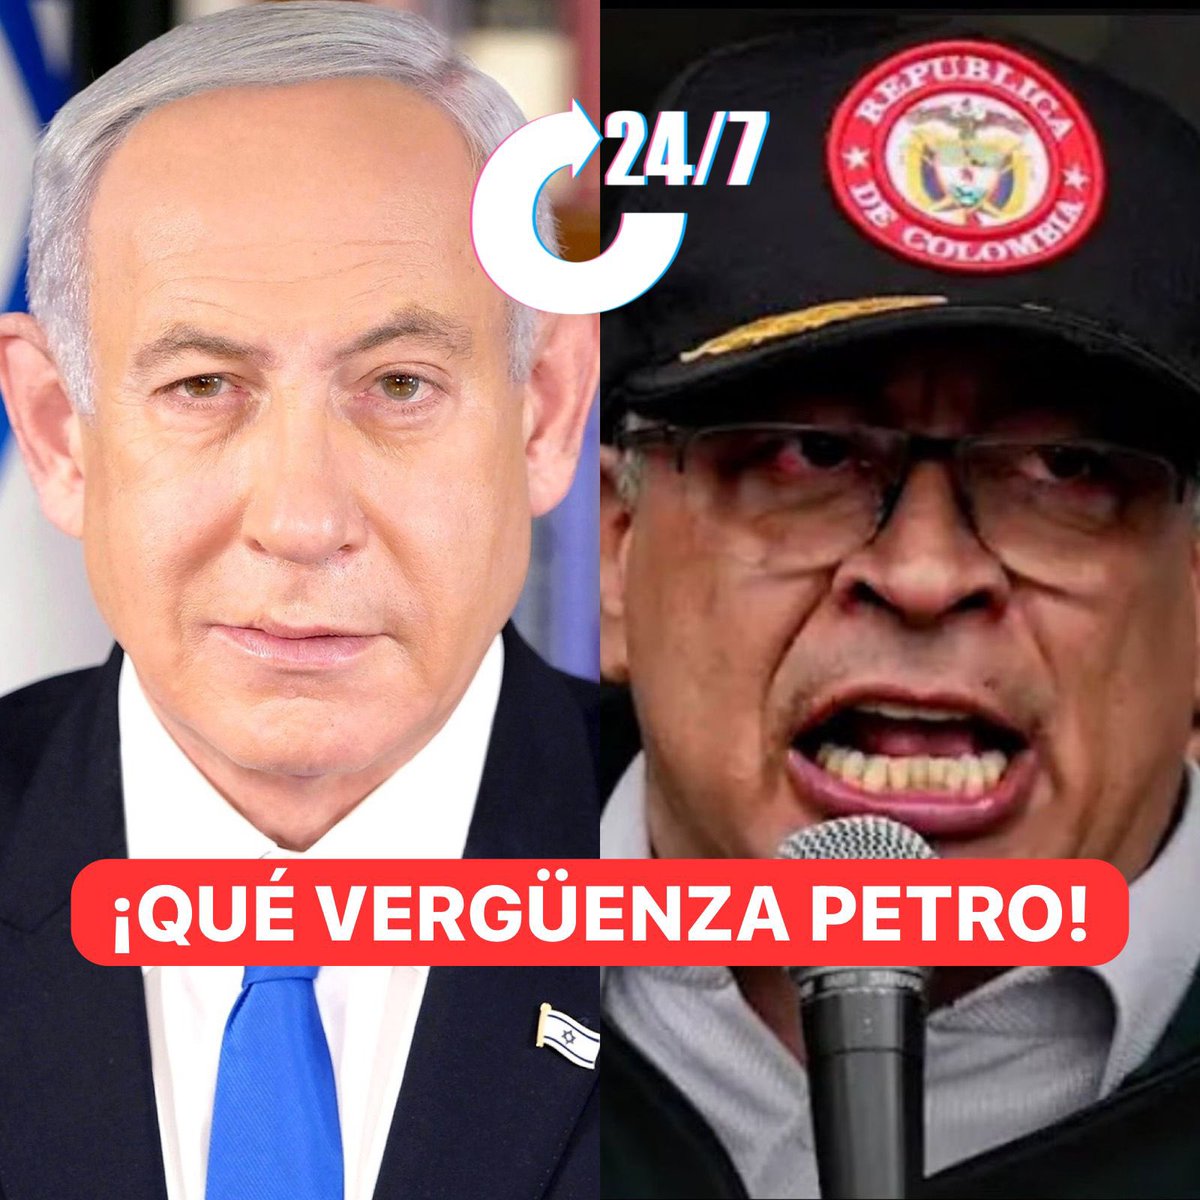 Primer Ministro Netanyahu al exterrorista Petro: 

“Israel no se dejará sermonear por un partidario antisemita de Hamás, una organización terrorista genocida que masacró, violó, mutiló y quemó vivas a 1.200 personas inocentes el 7 de octubre. ¡Qué vergüenza, presidente Petro!”